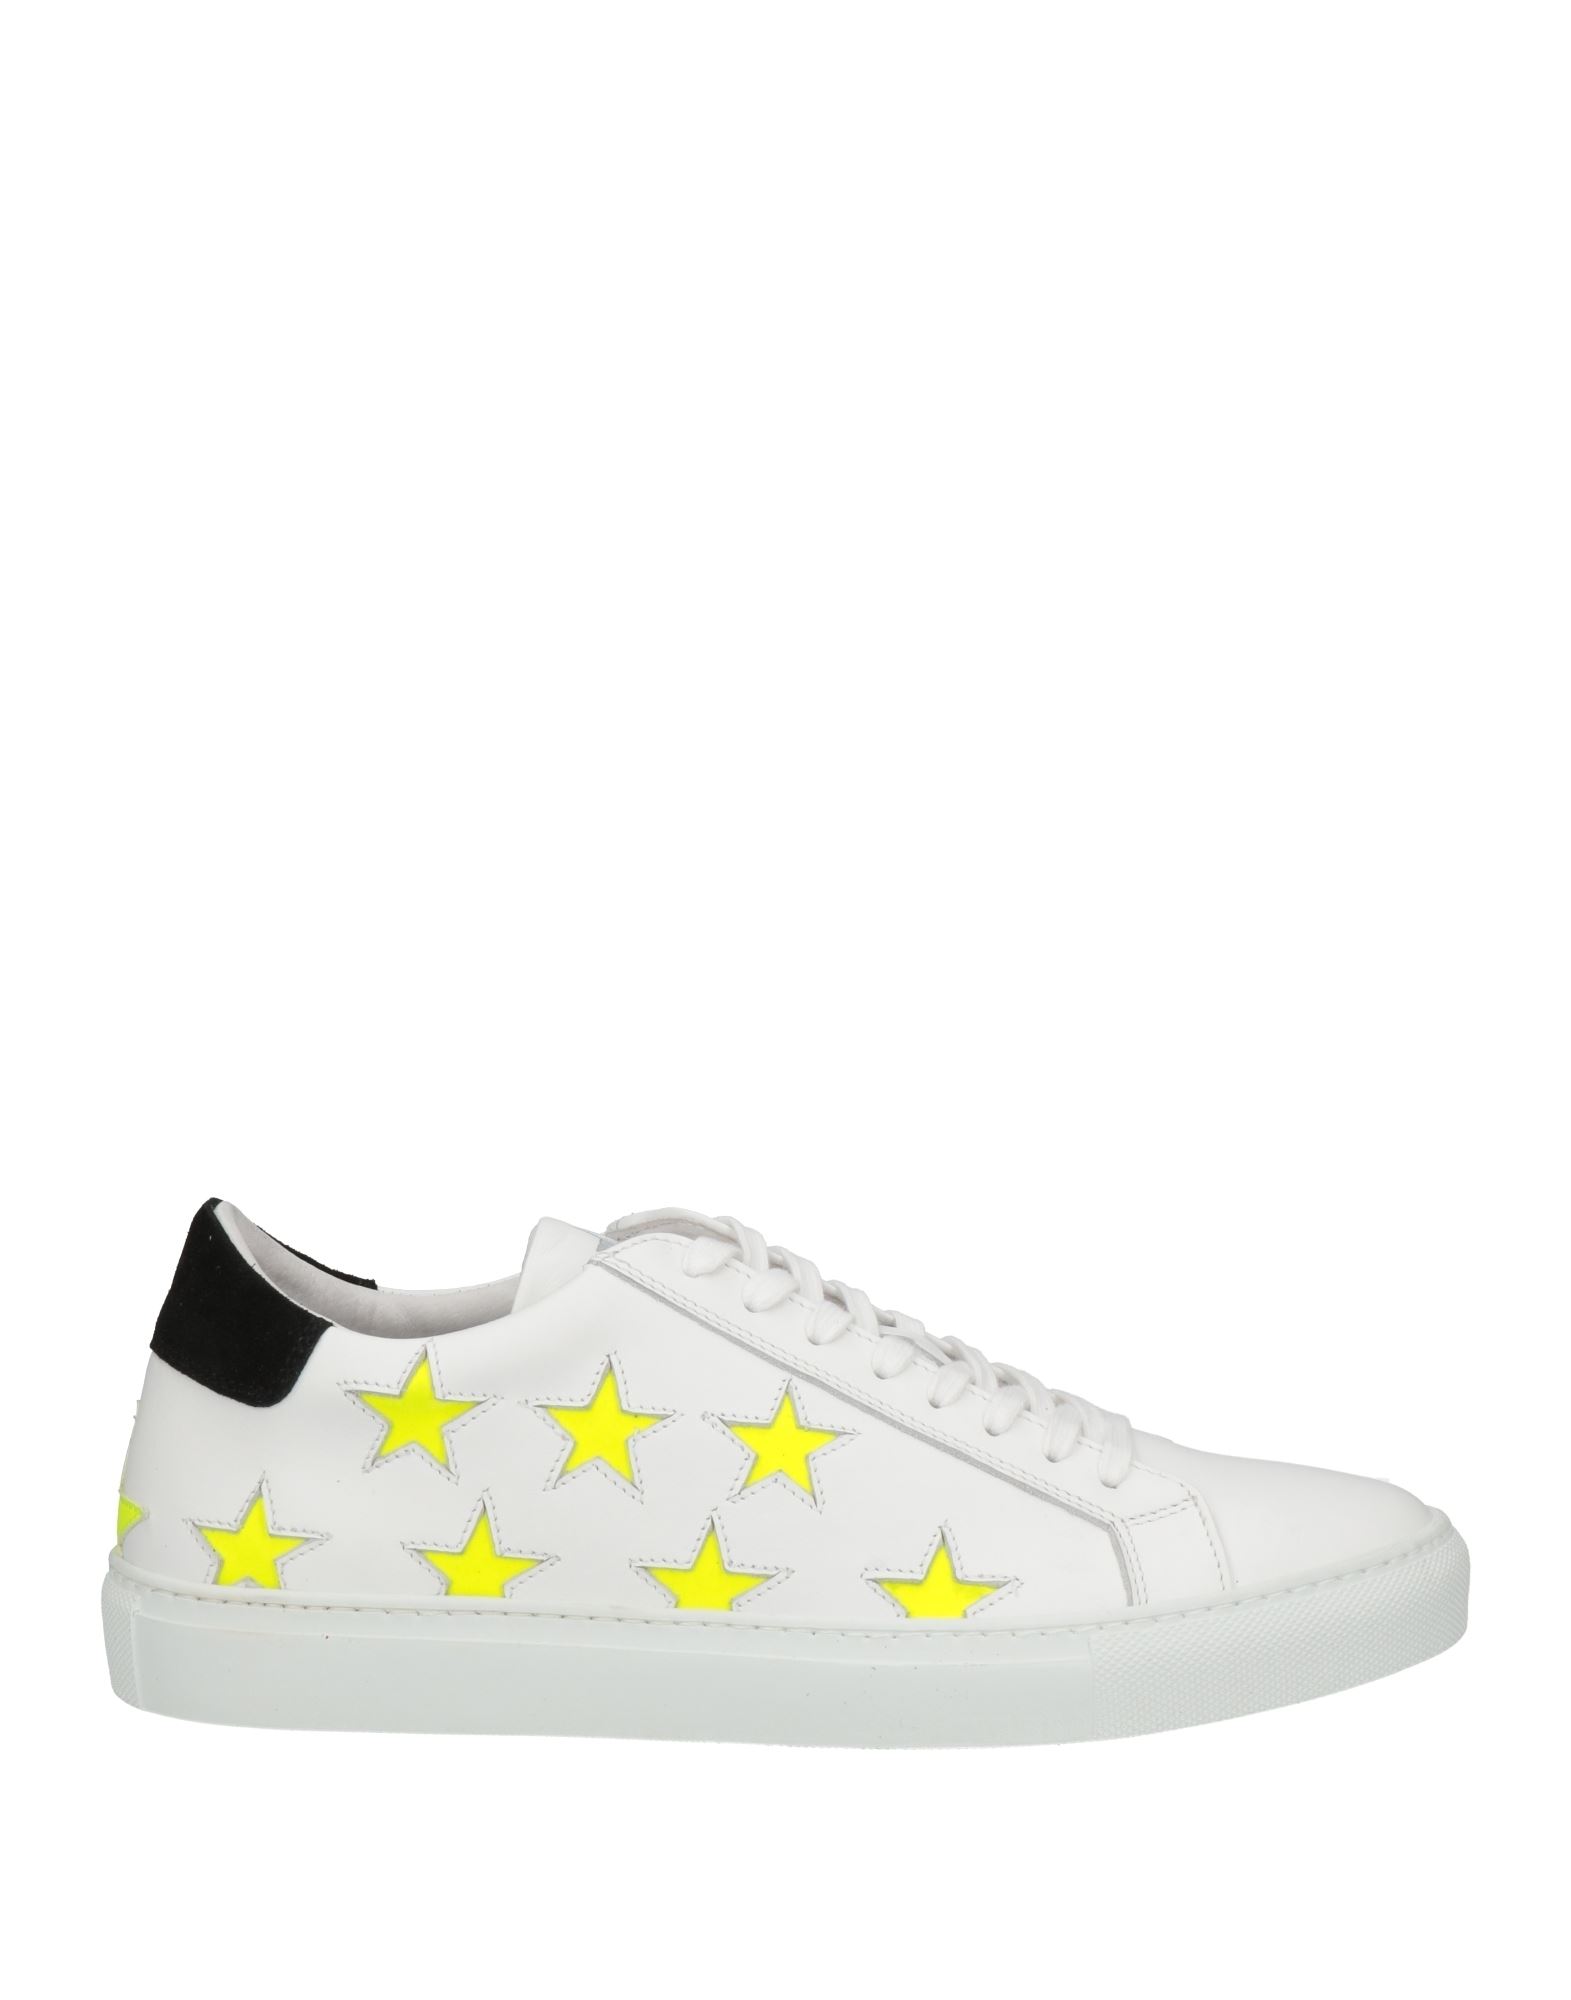 Shop Macchia J Man Sneakers White Size 7 Soft Leather